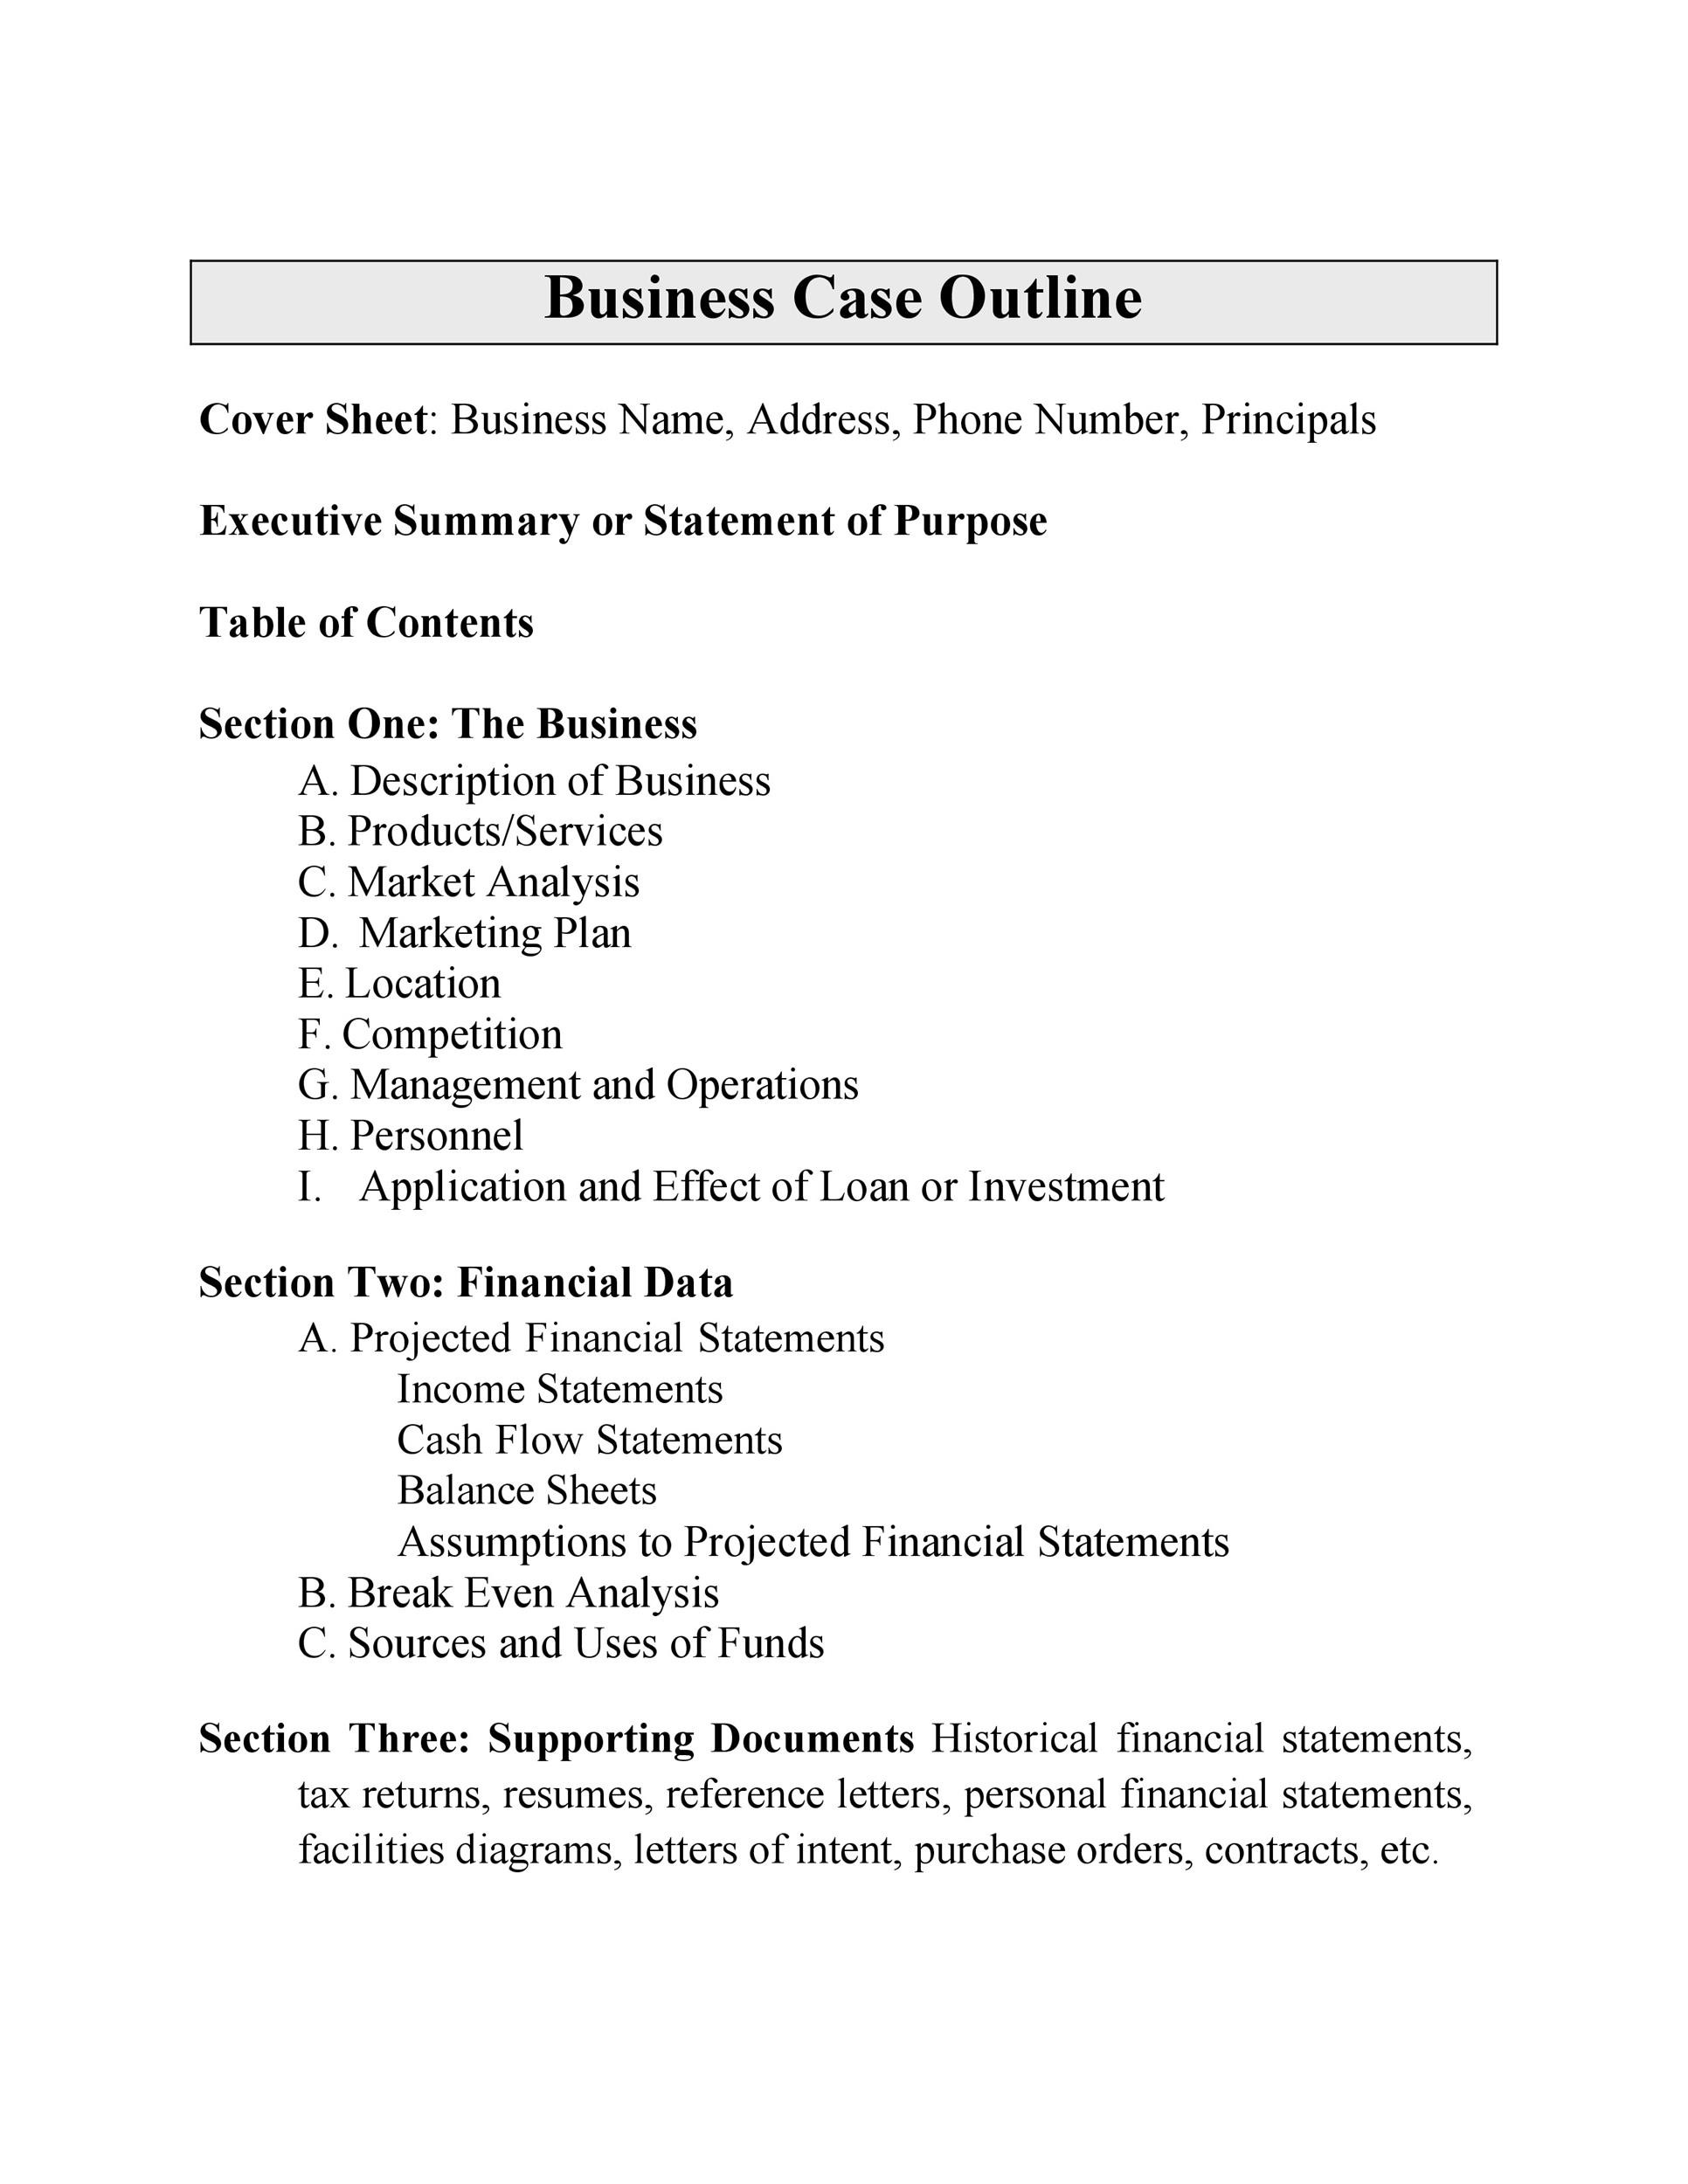 sample business case presentation